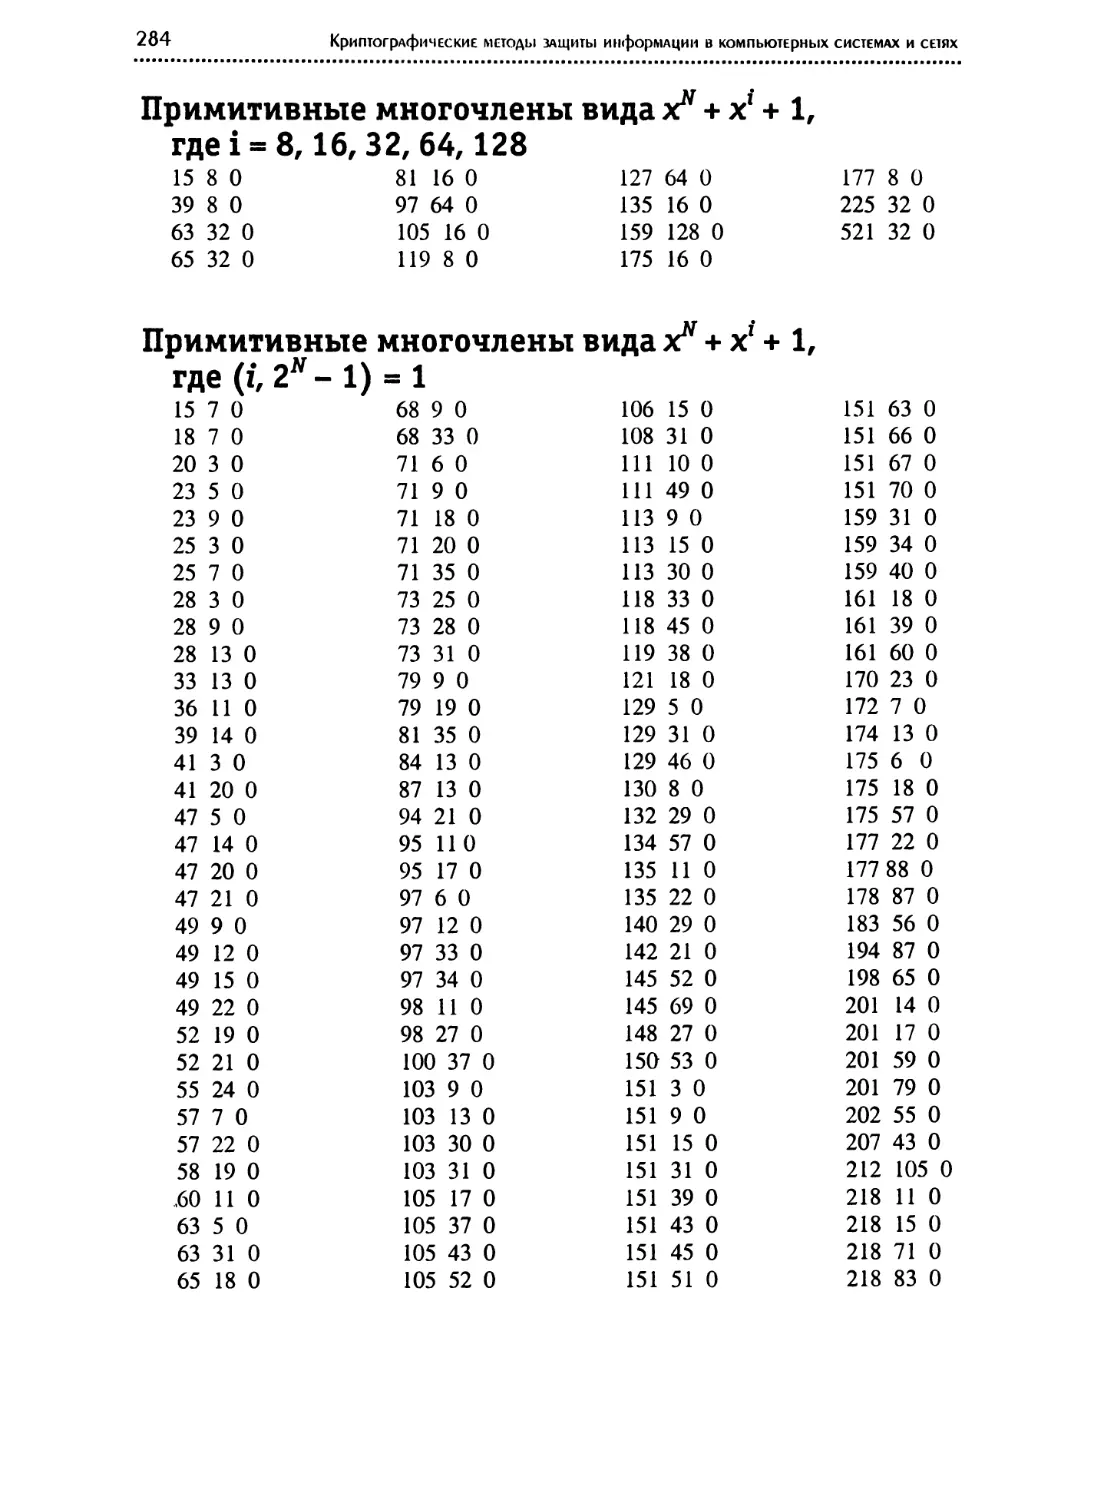 Примитивные многочлены вида X^N+ x^i+ 1, где i = 8, 16, 32, 64, 128